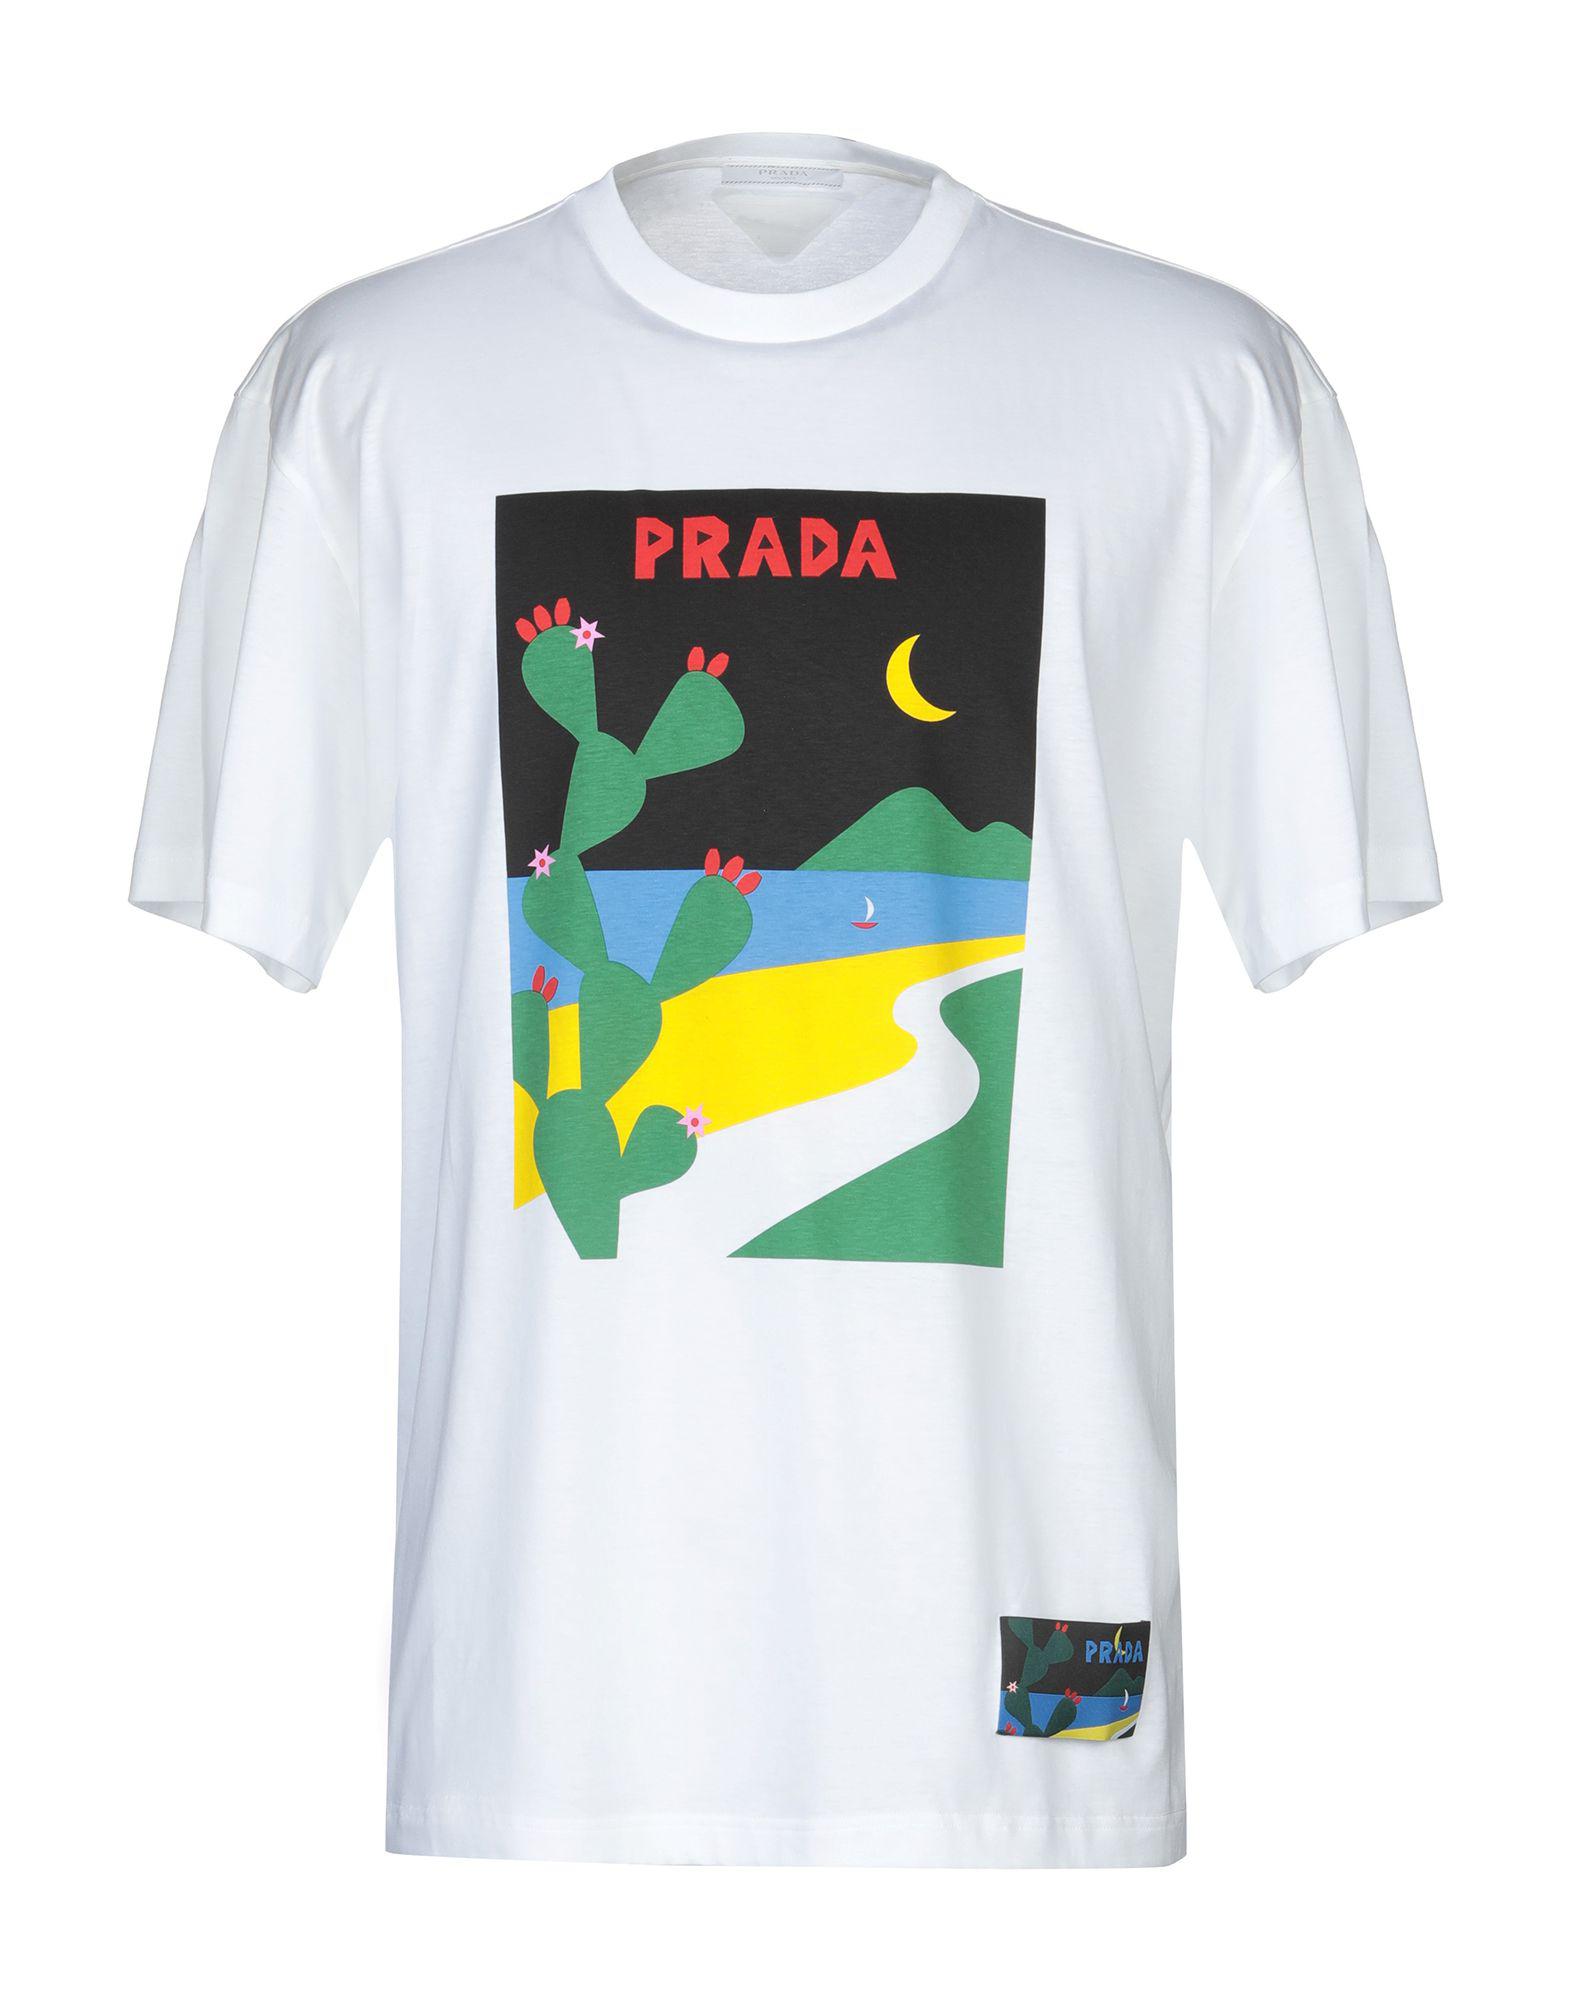 Prada T-shirt in White for Men - Lyst